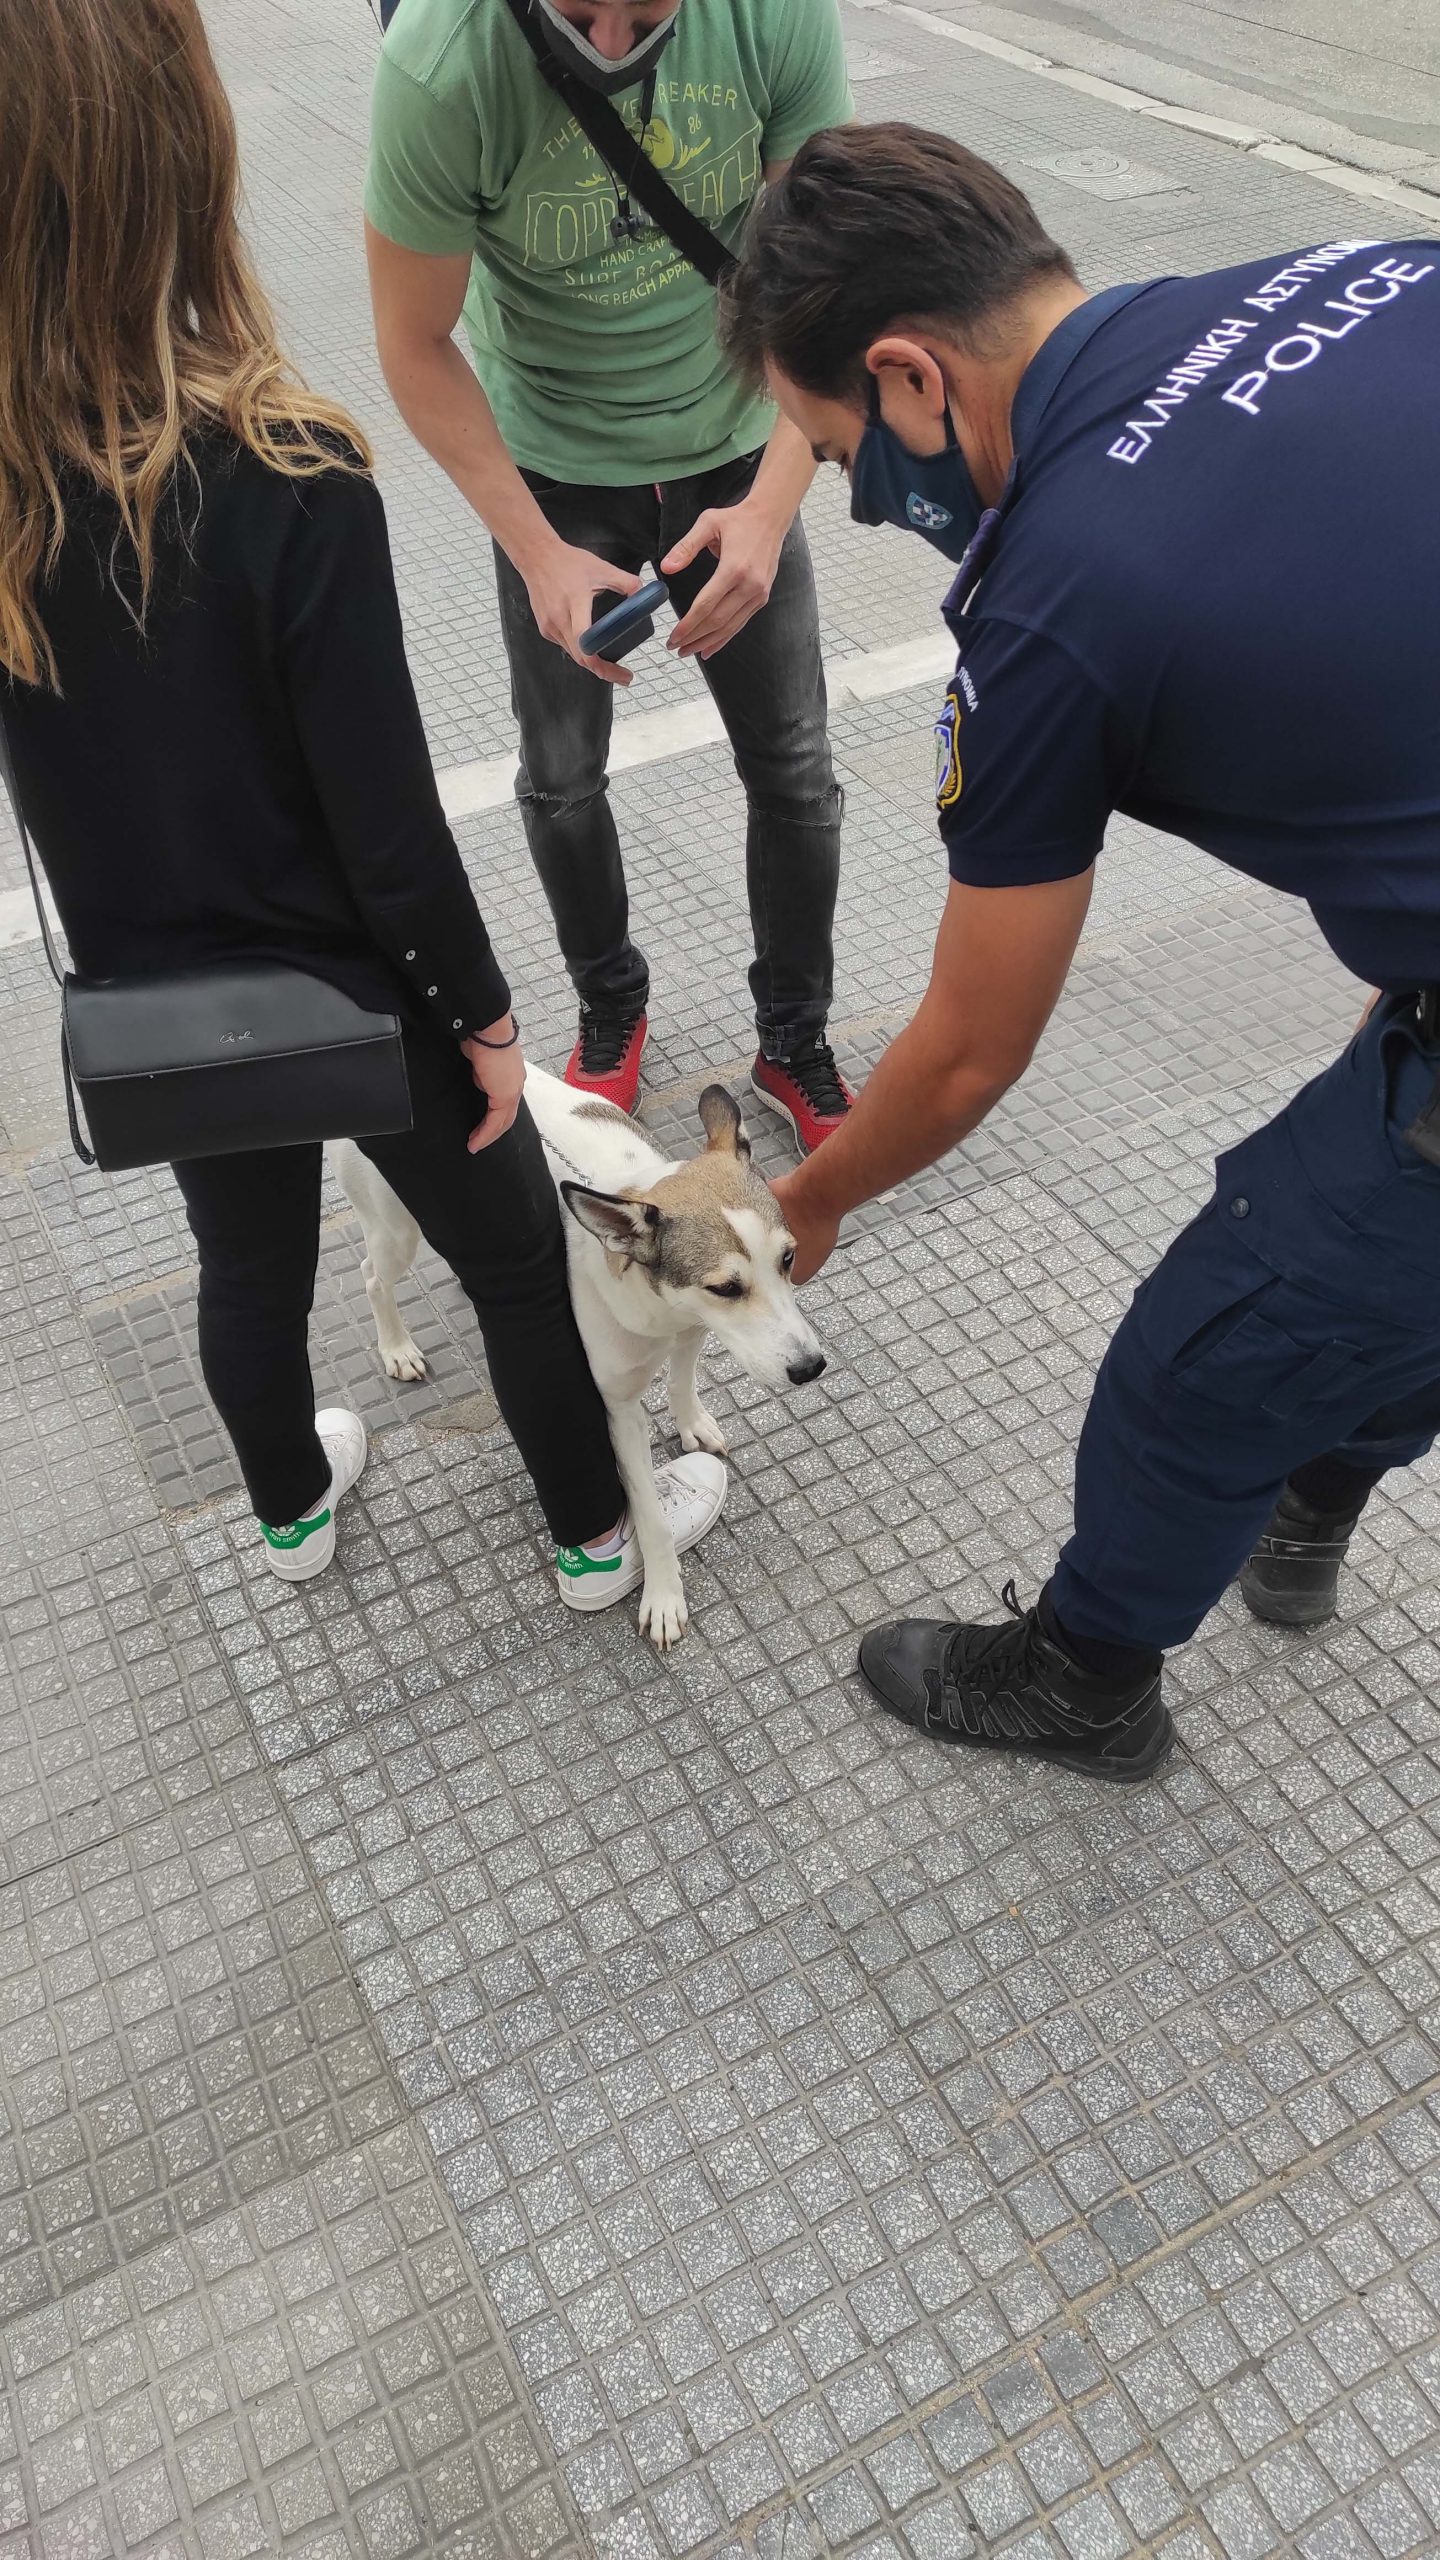 Έλεγχοι σε δεσποζόμενα ζώα συντροφιάς πραγματοποιήθηκαν από το Αστυνομικό Τμήμα Λευκού Πύργου